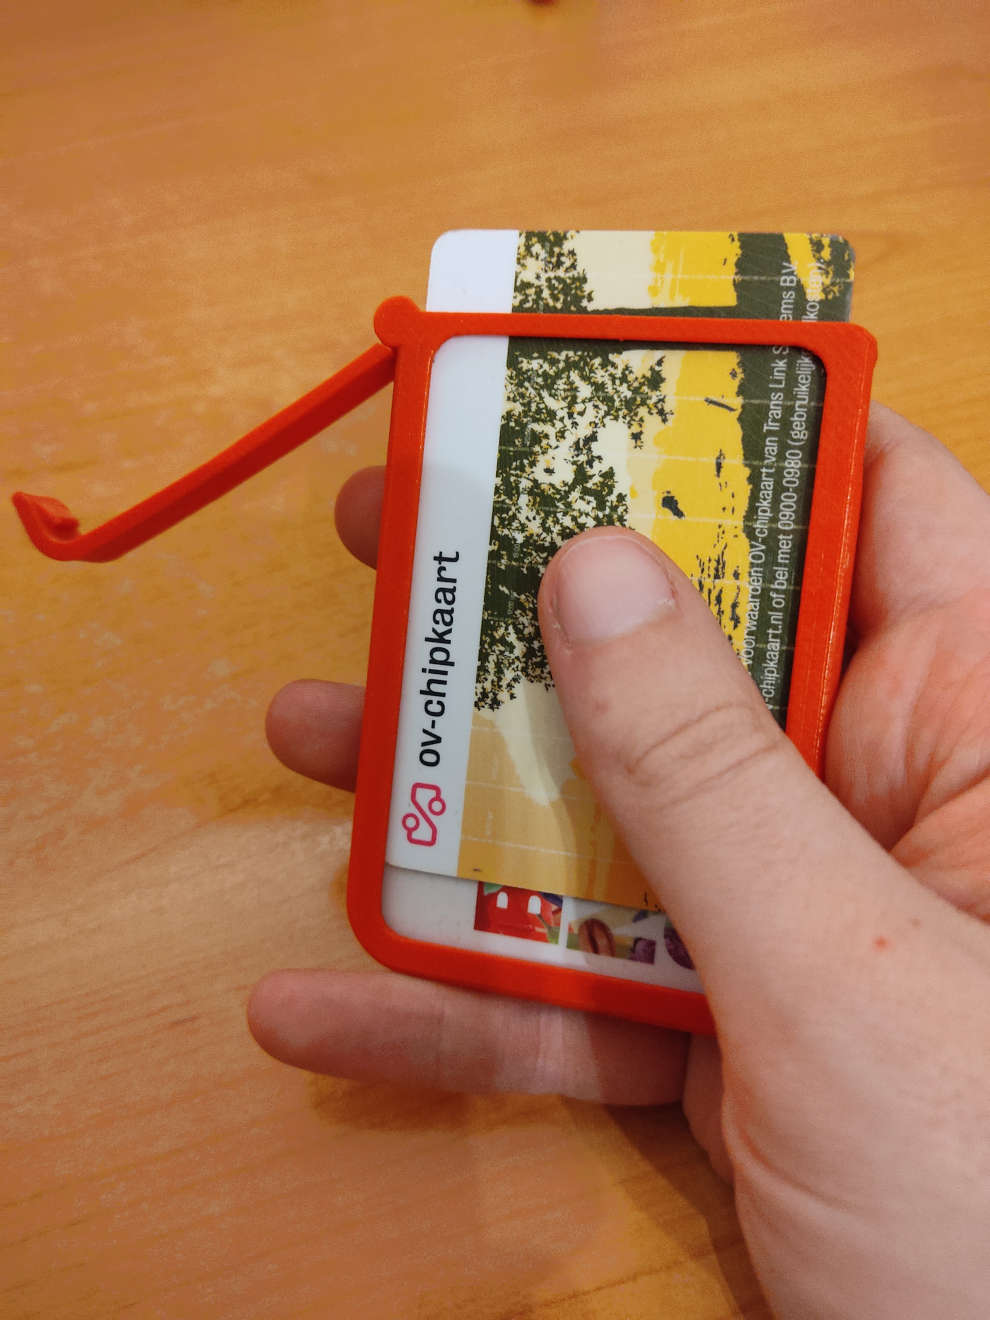 Snap-fit hinge wallet / card case